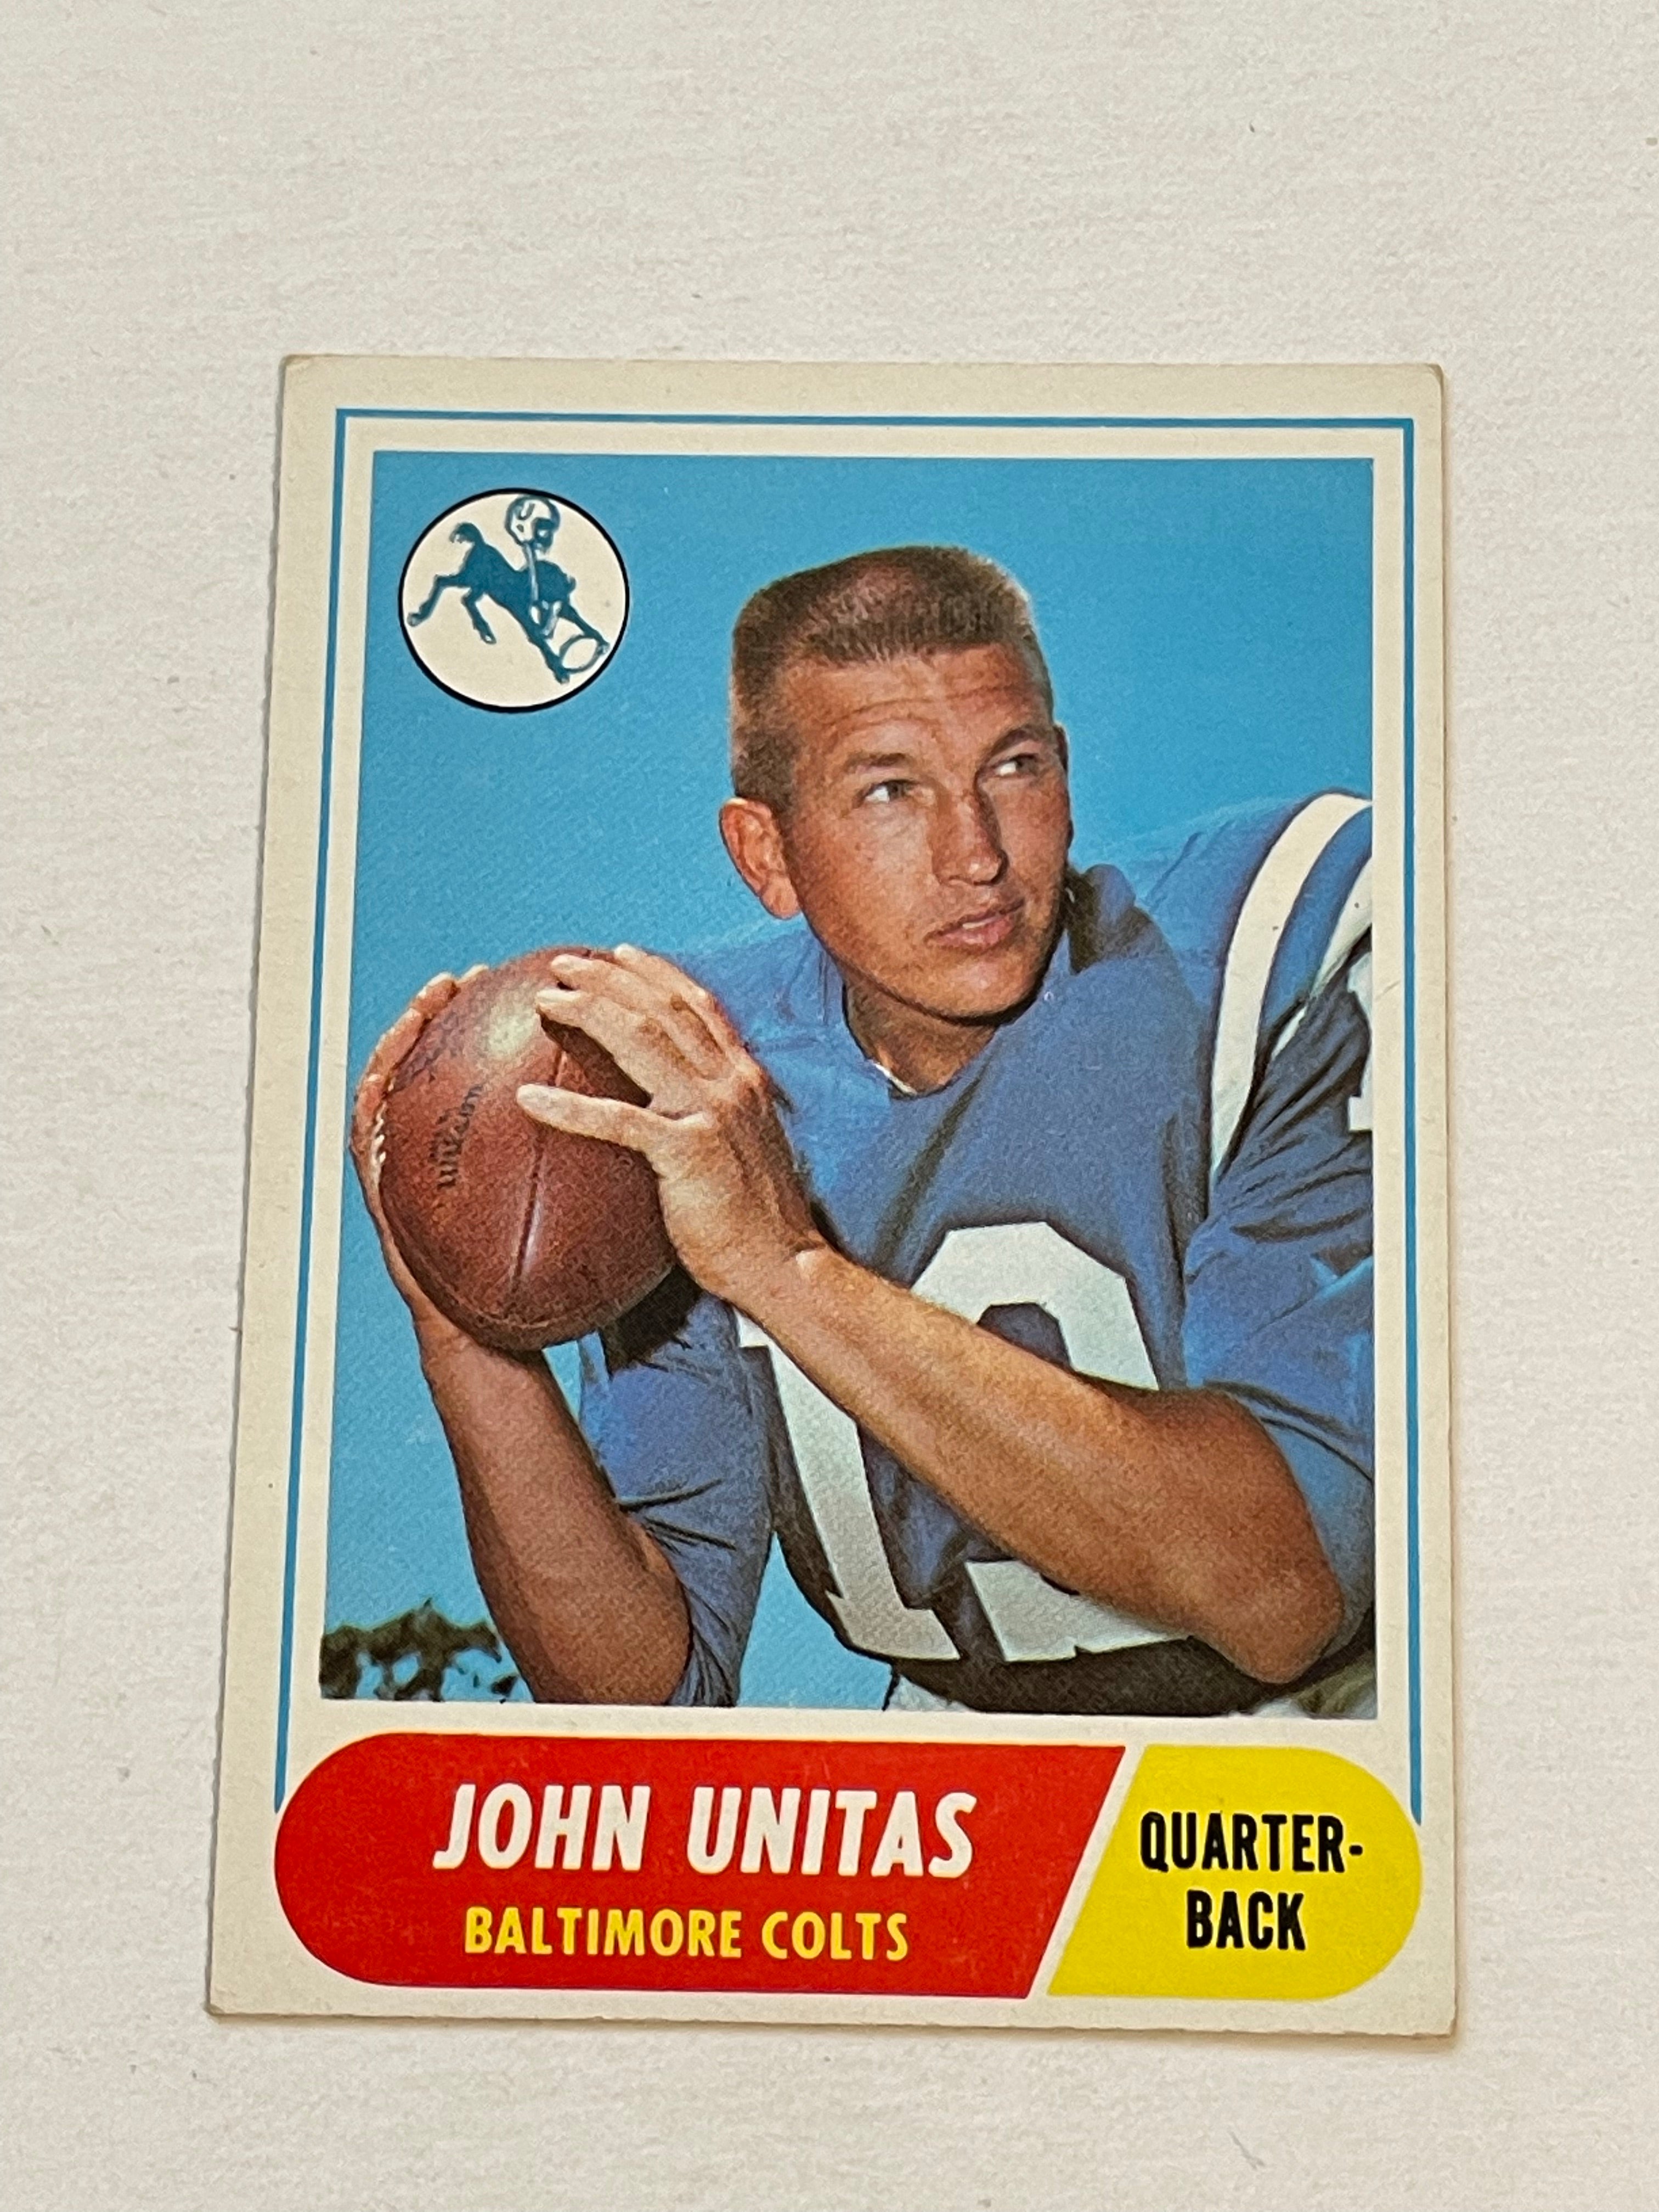 Johnny Unitas rare football card 1968